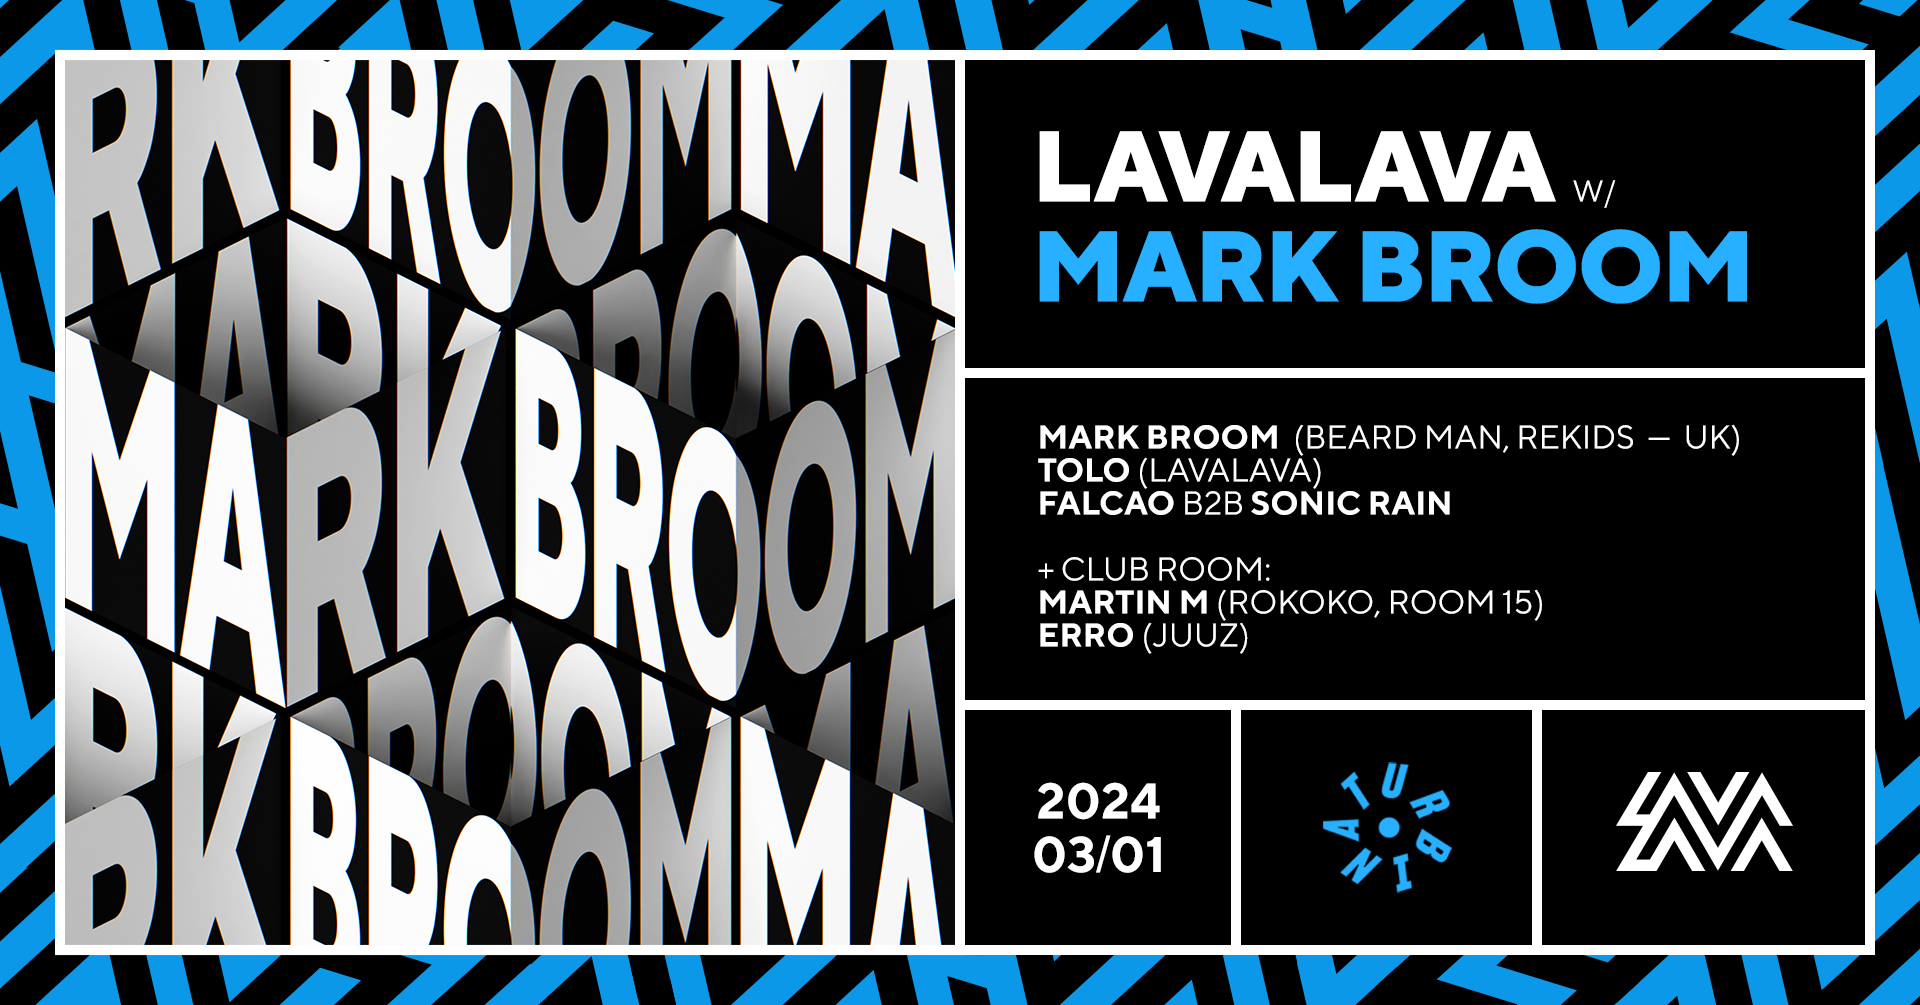 LavaLava with Mark Broom - フライヤー表